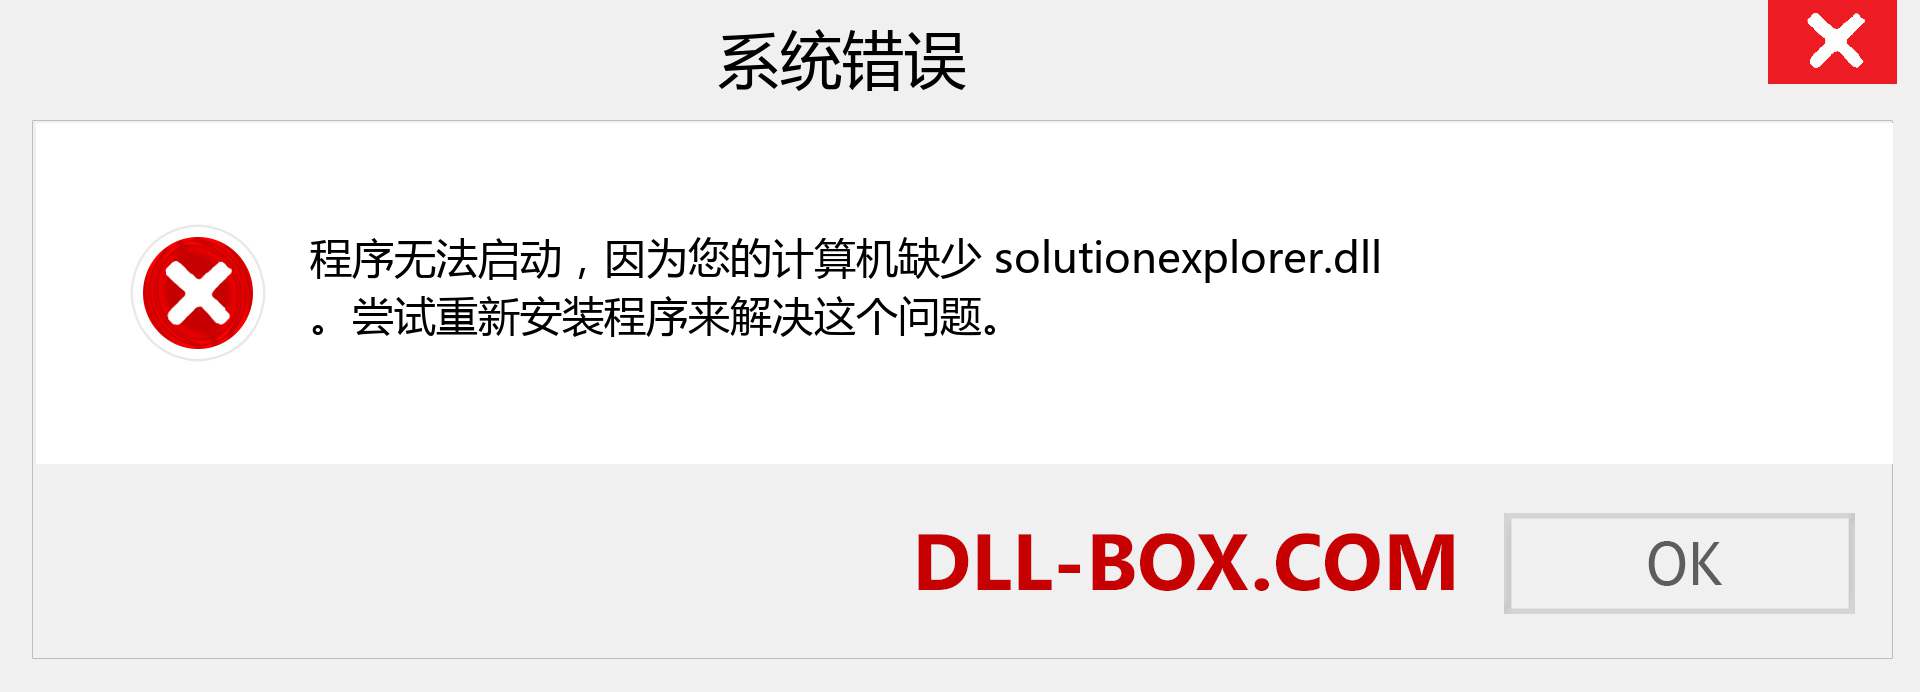 solutionexplorer.dll 文件丢失？。 适用于 Windows 7、8、10 的下载 - 修复 Windows、照片、图像上的 solutionexplorer dll 丢失错误